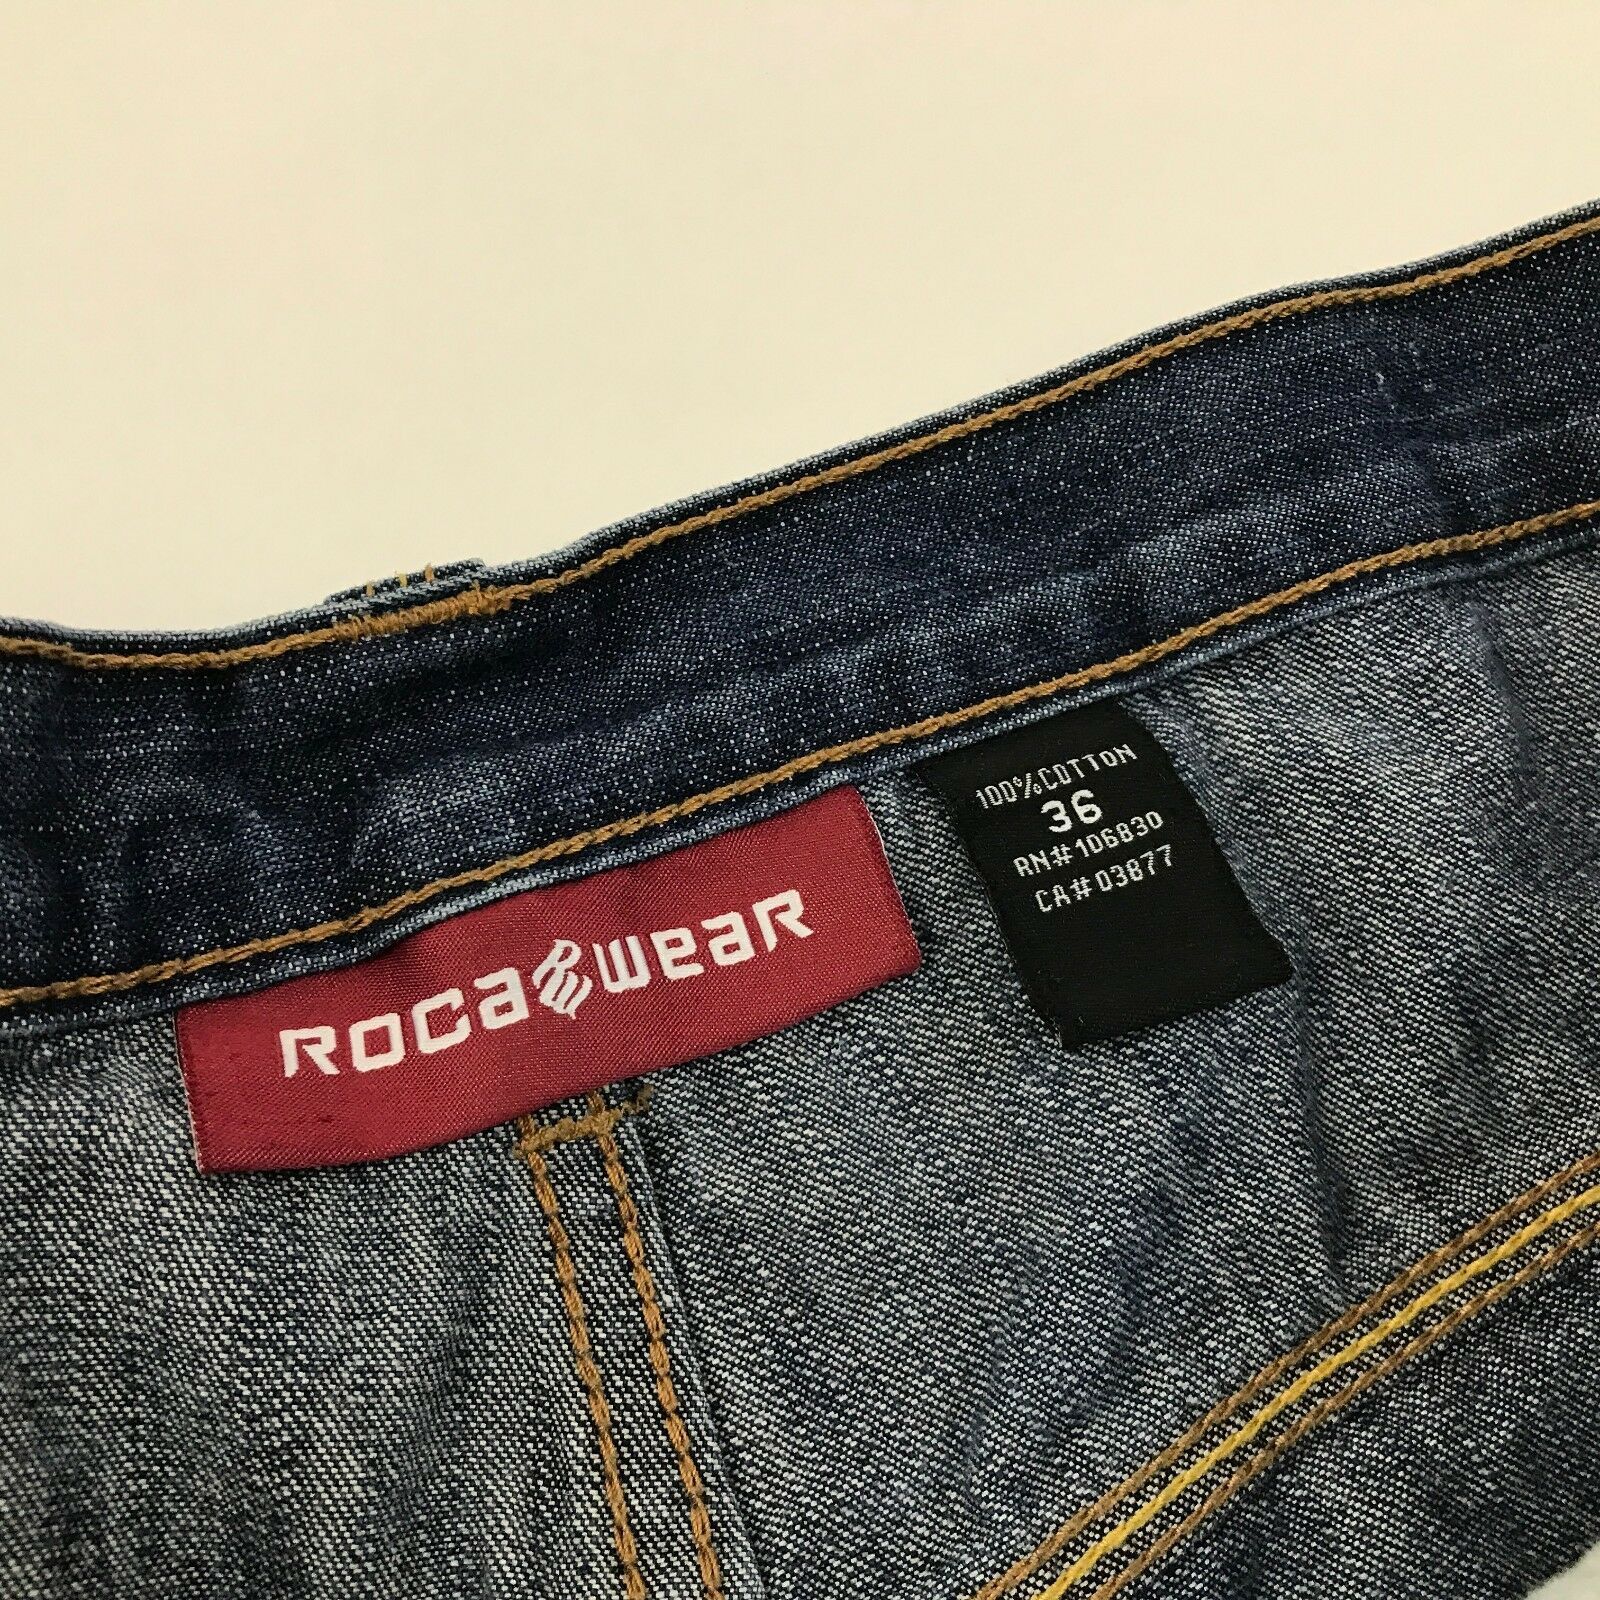 VINTAGE Rocawear Jeans Size 36x30 Baggy Dark Wash Denim Roll Cuff Urban ...